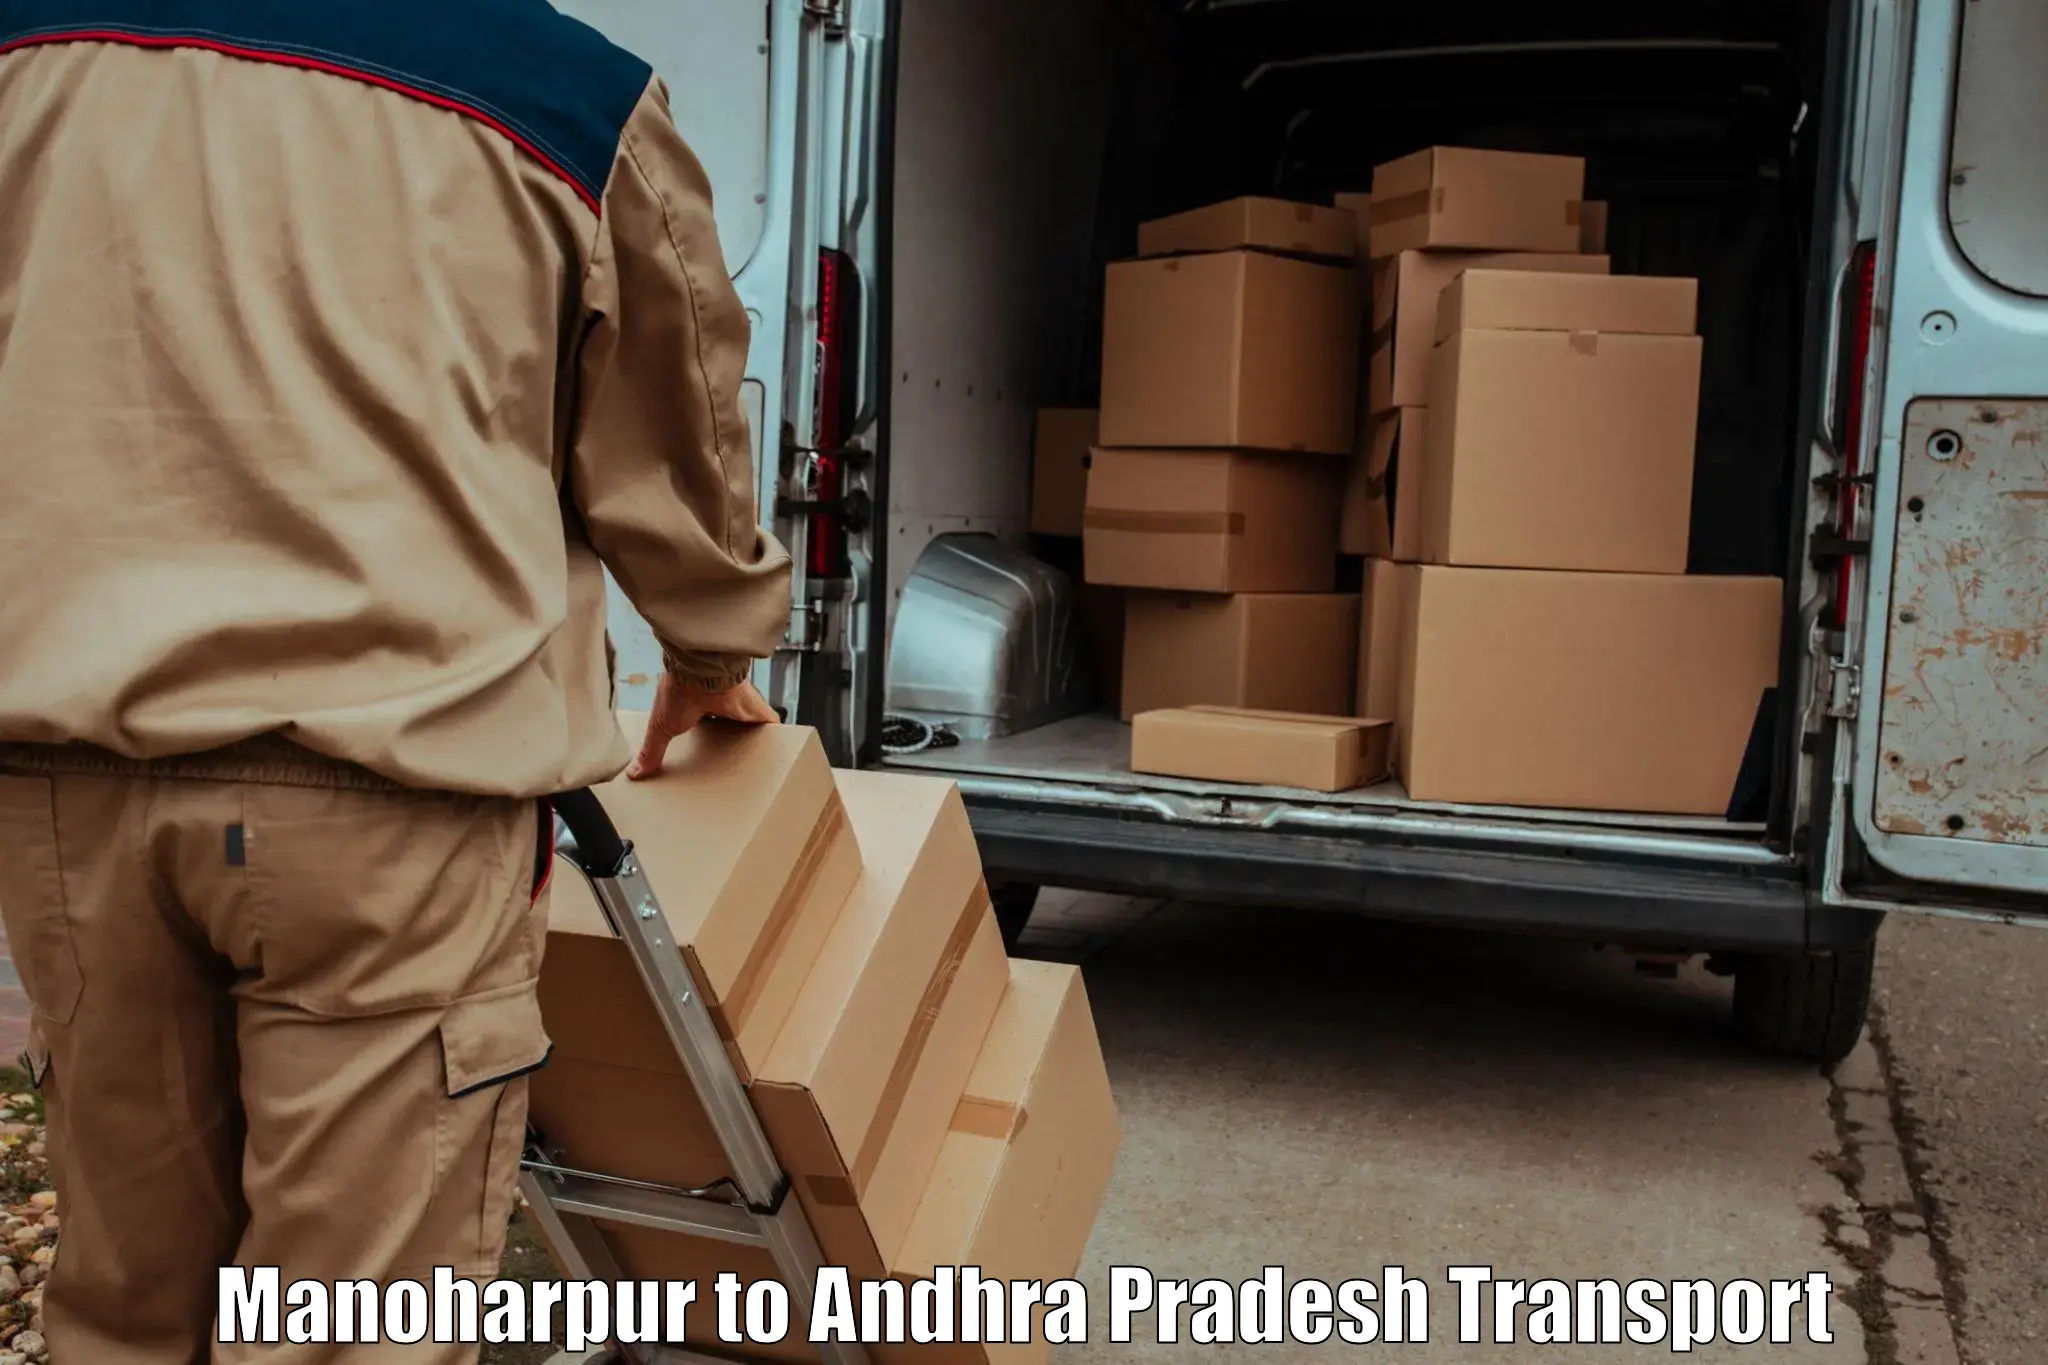 Daily transport service Manoharpur to Gudur